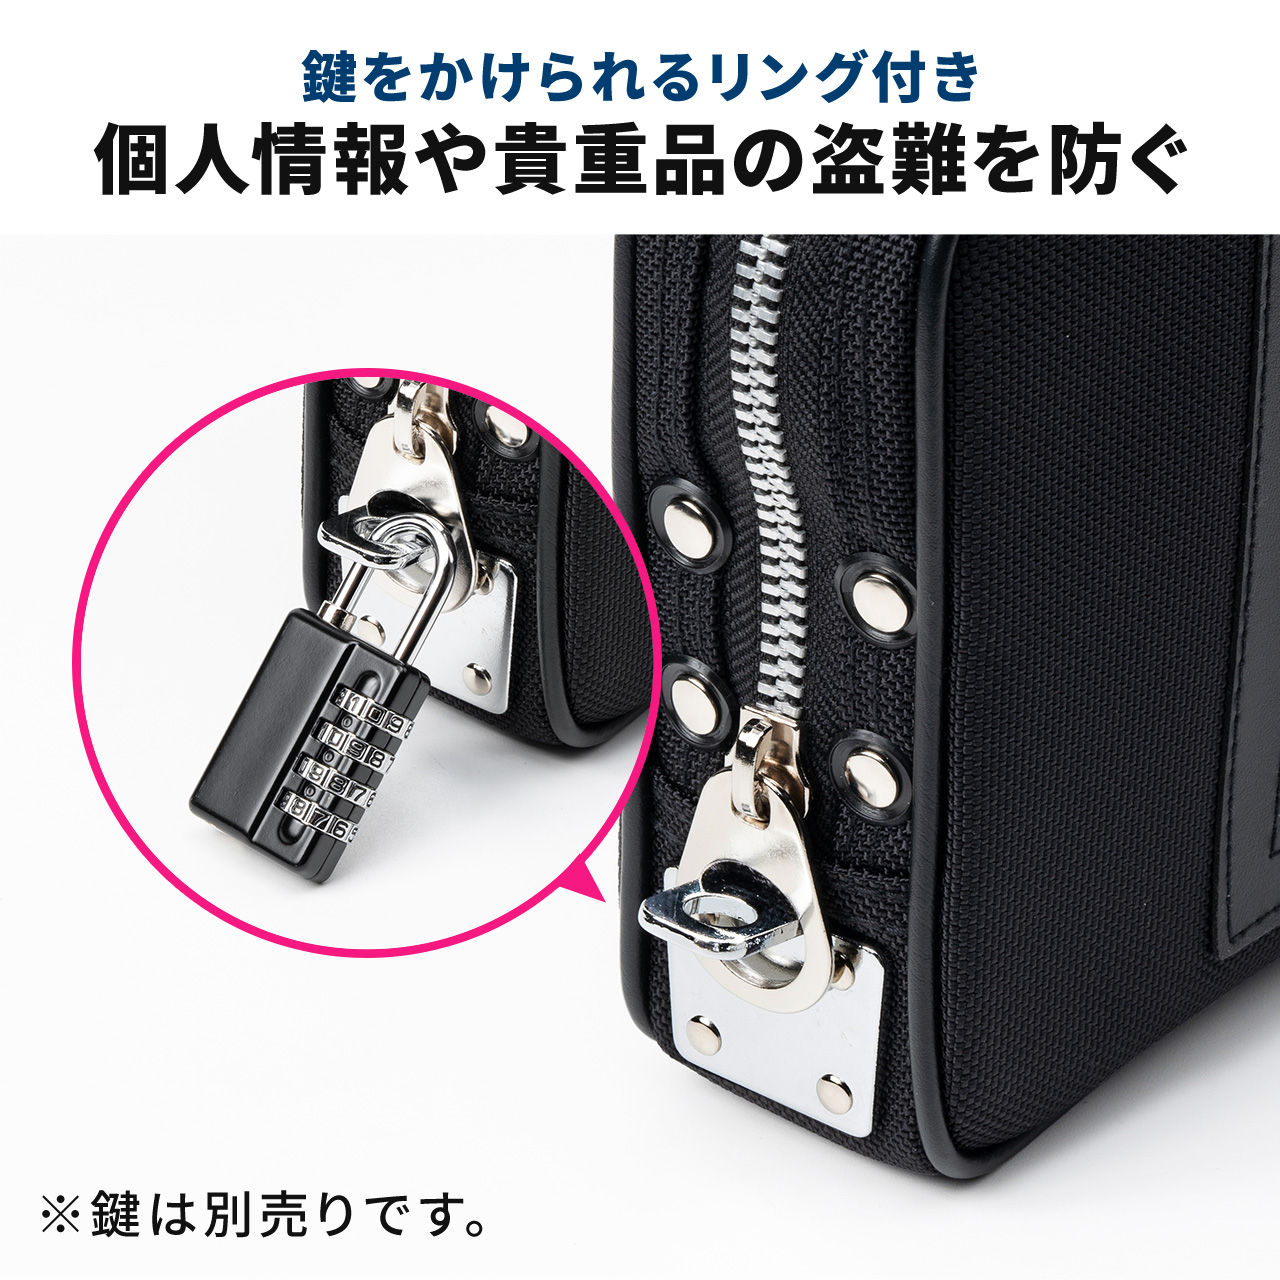  система безопасности сумка S размер B6 размер соответствует шероховатость палочка нейлон использование ключ установка кольцо имеется система безопасности сумка EZ2-SL098S